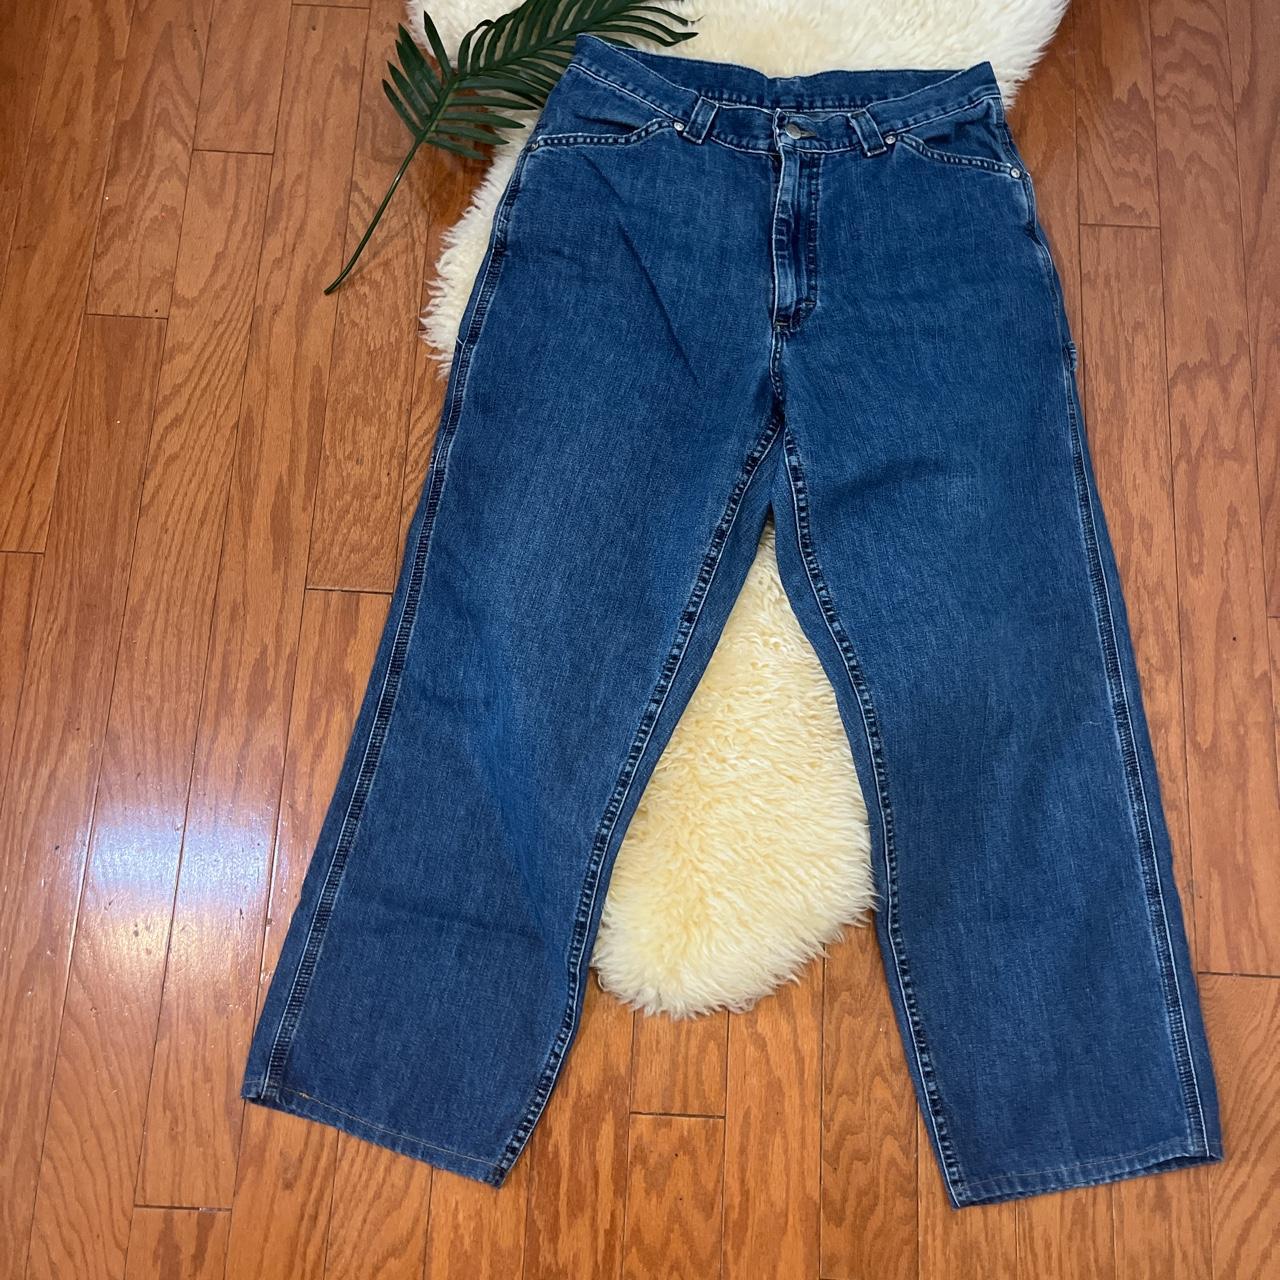 Vintage Carpenter Denim Jeans by Lee/ Size 10/ Good... - Depop